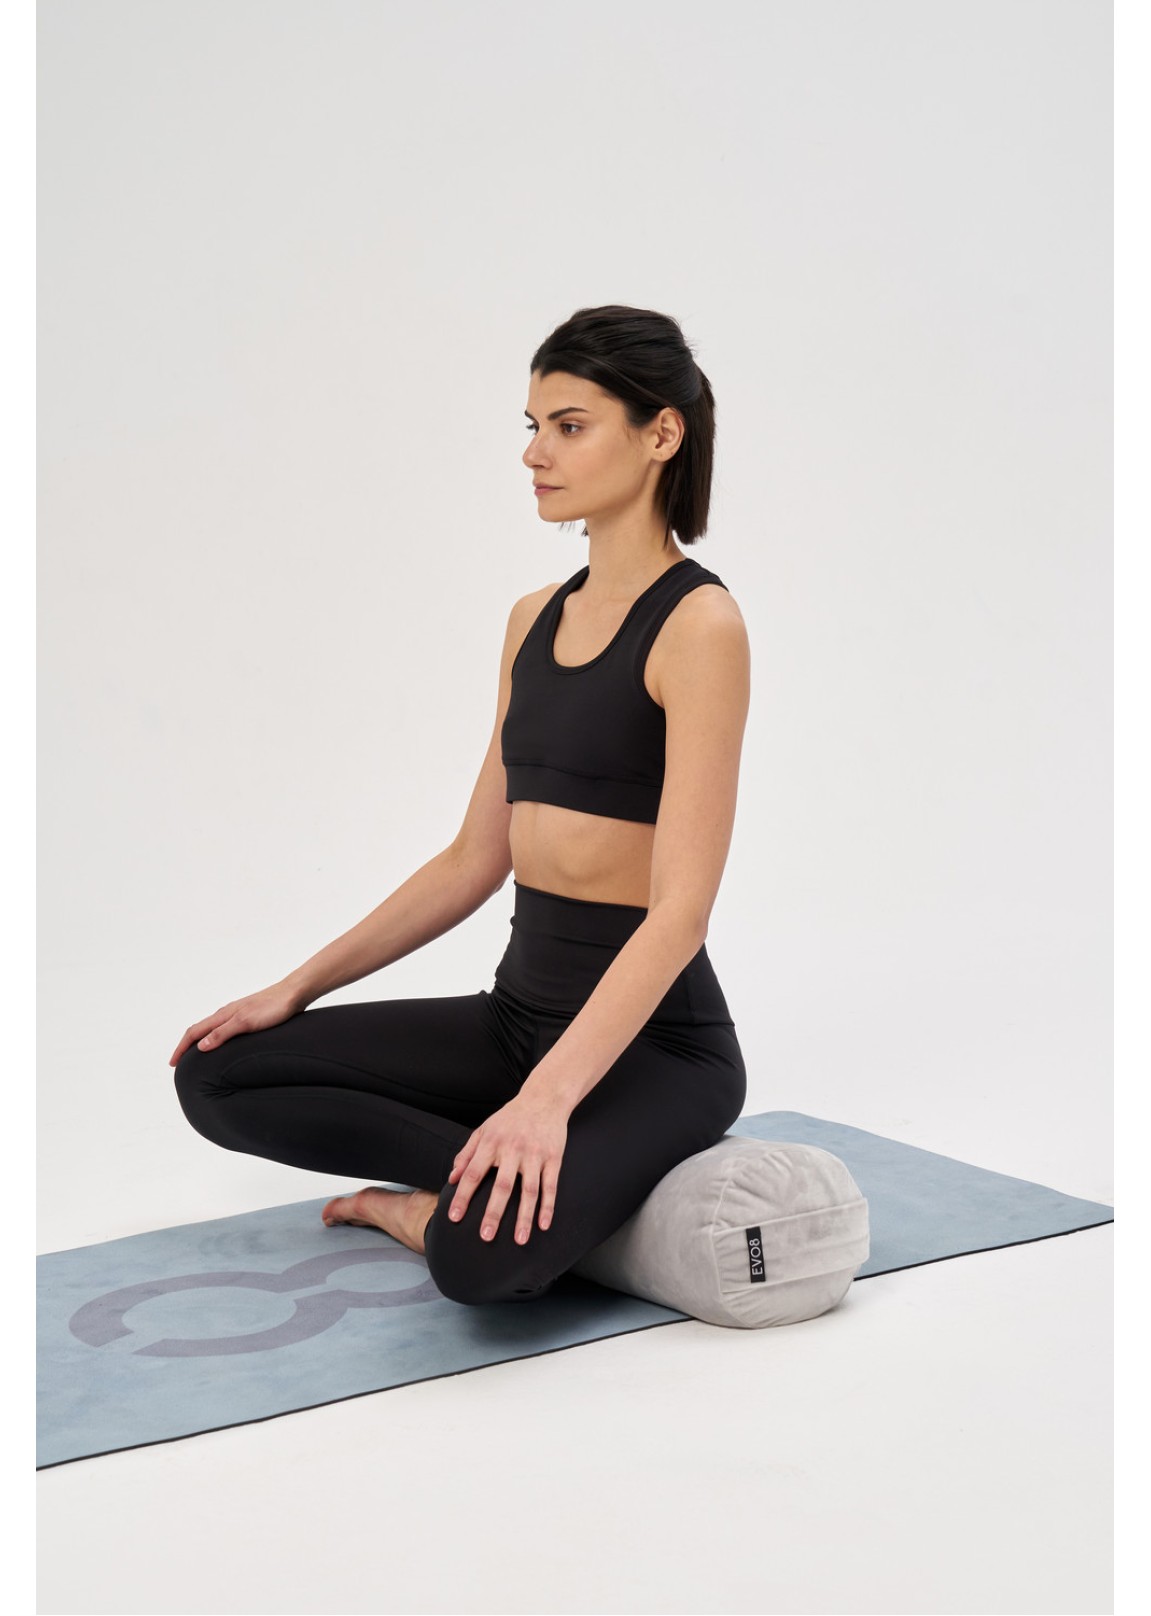 Casall Yoga Mat Position 4 mm Blue